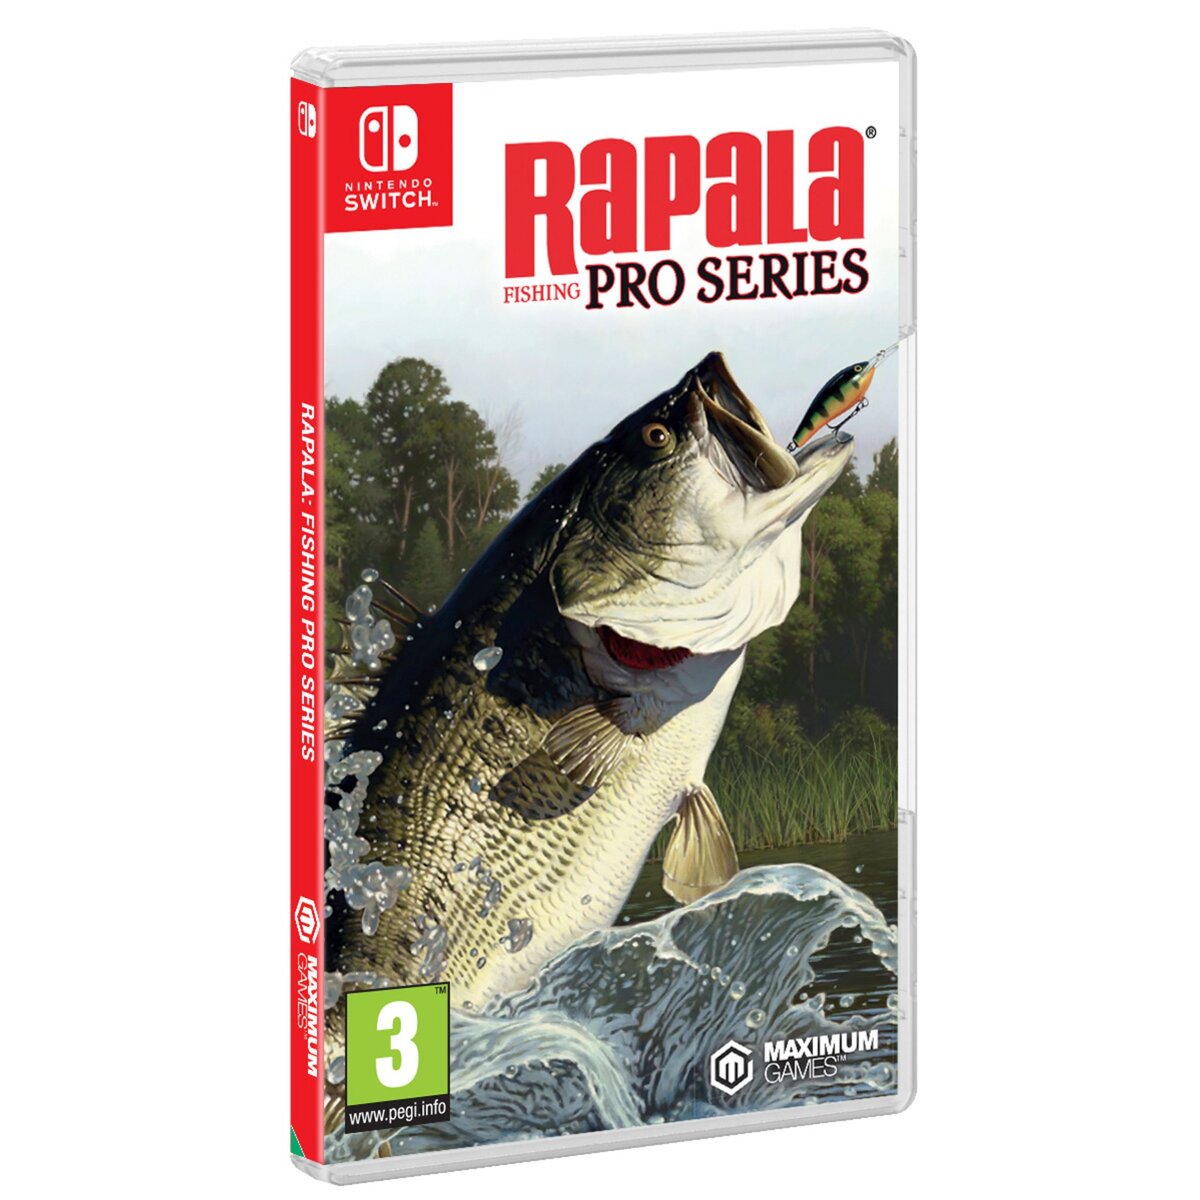 Rapala Fishing Pro Series SWITCH